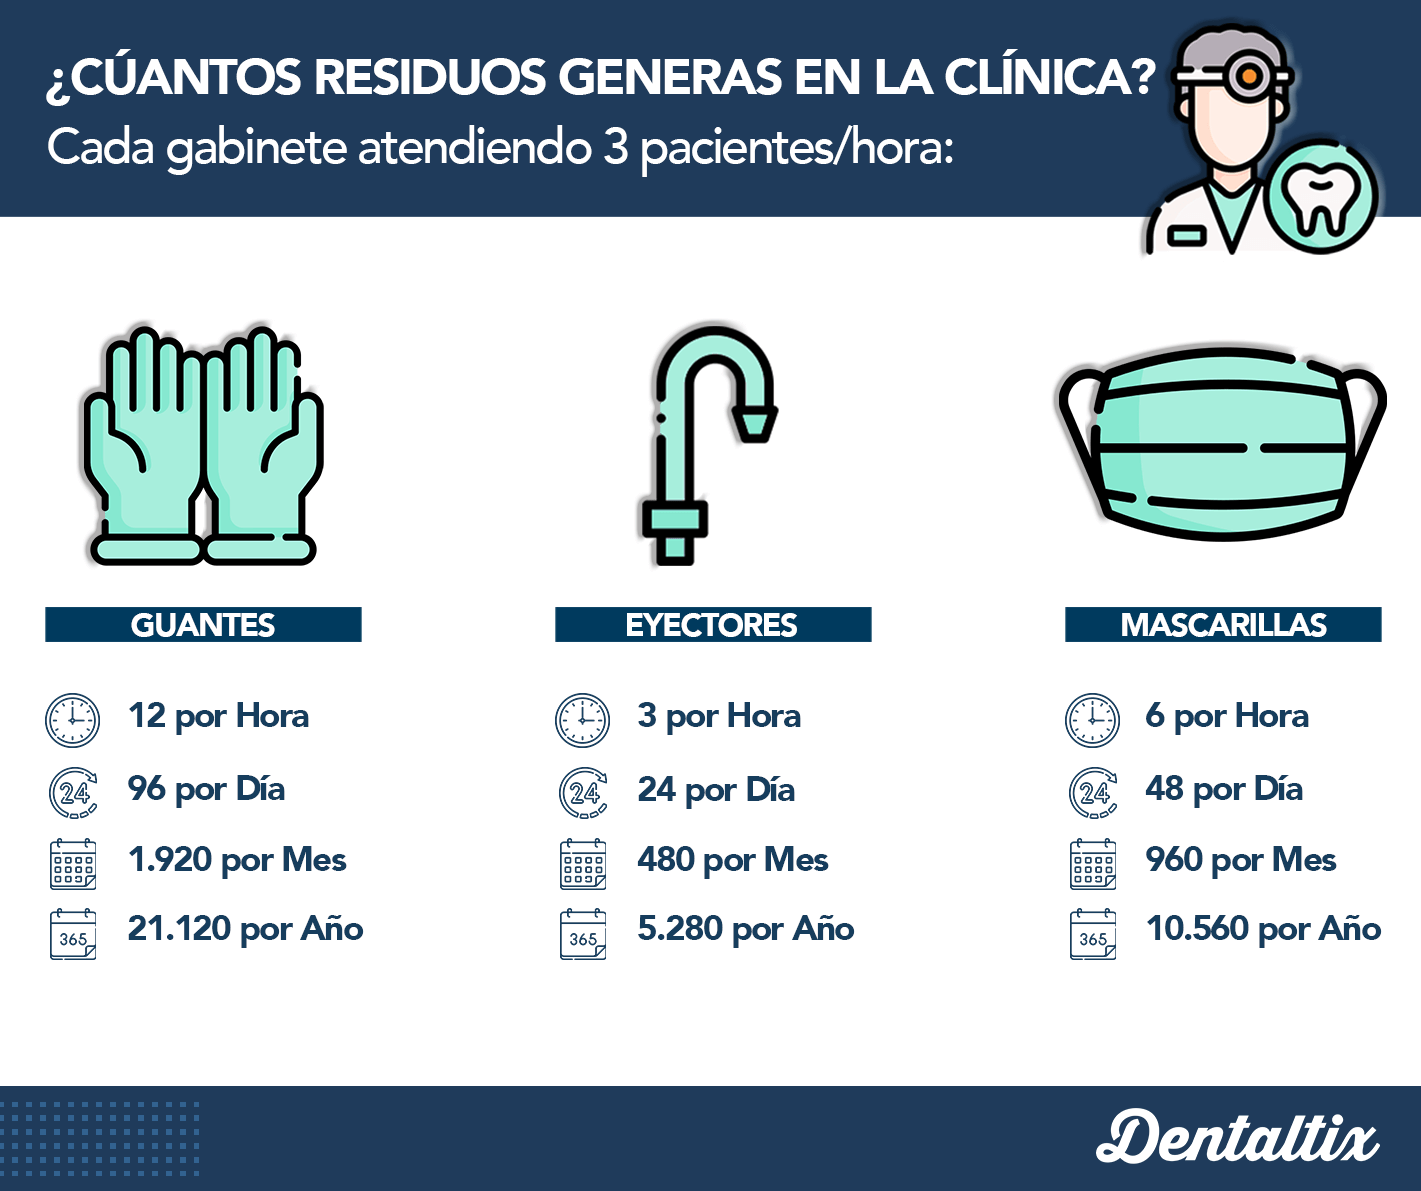 Residuos generados en la clínica dental